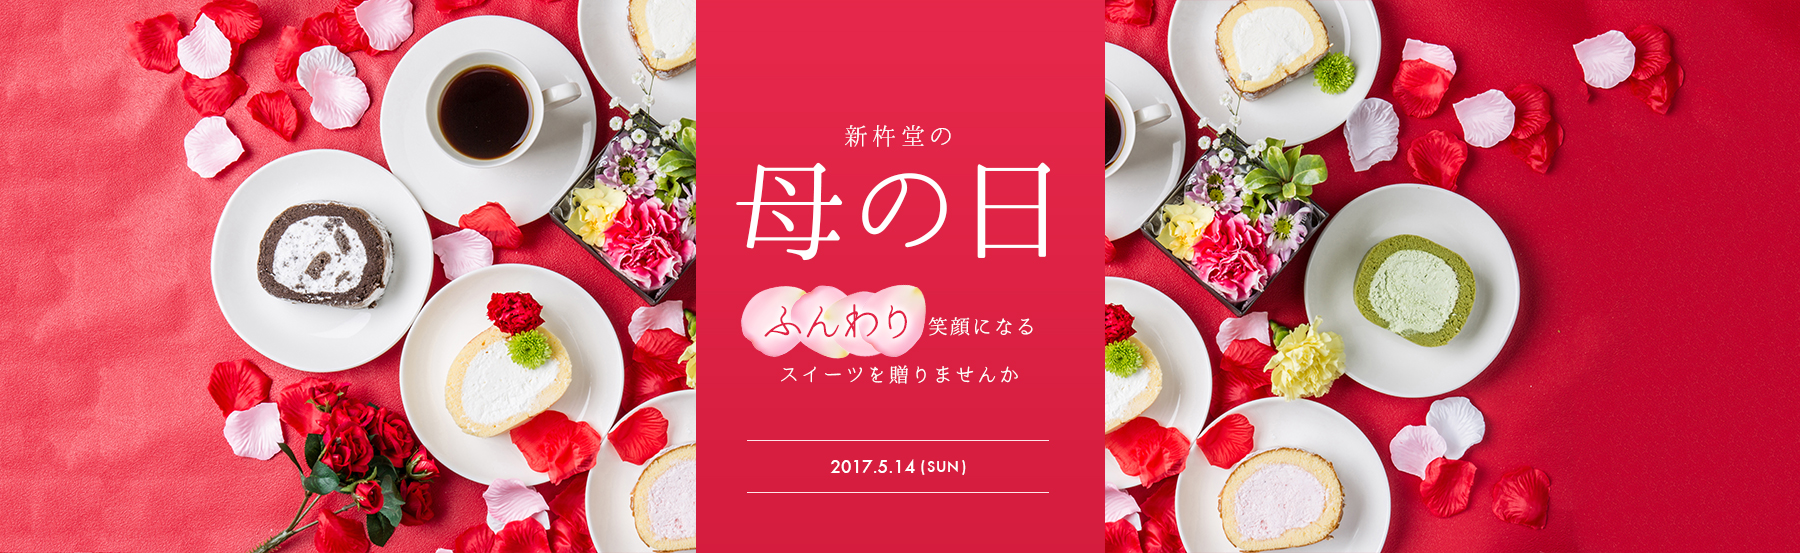 新杵堂の母の日〜ふんわり笑顔になるスイーツを贈りませんか〜2017.5.14(SUN)